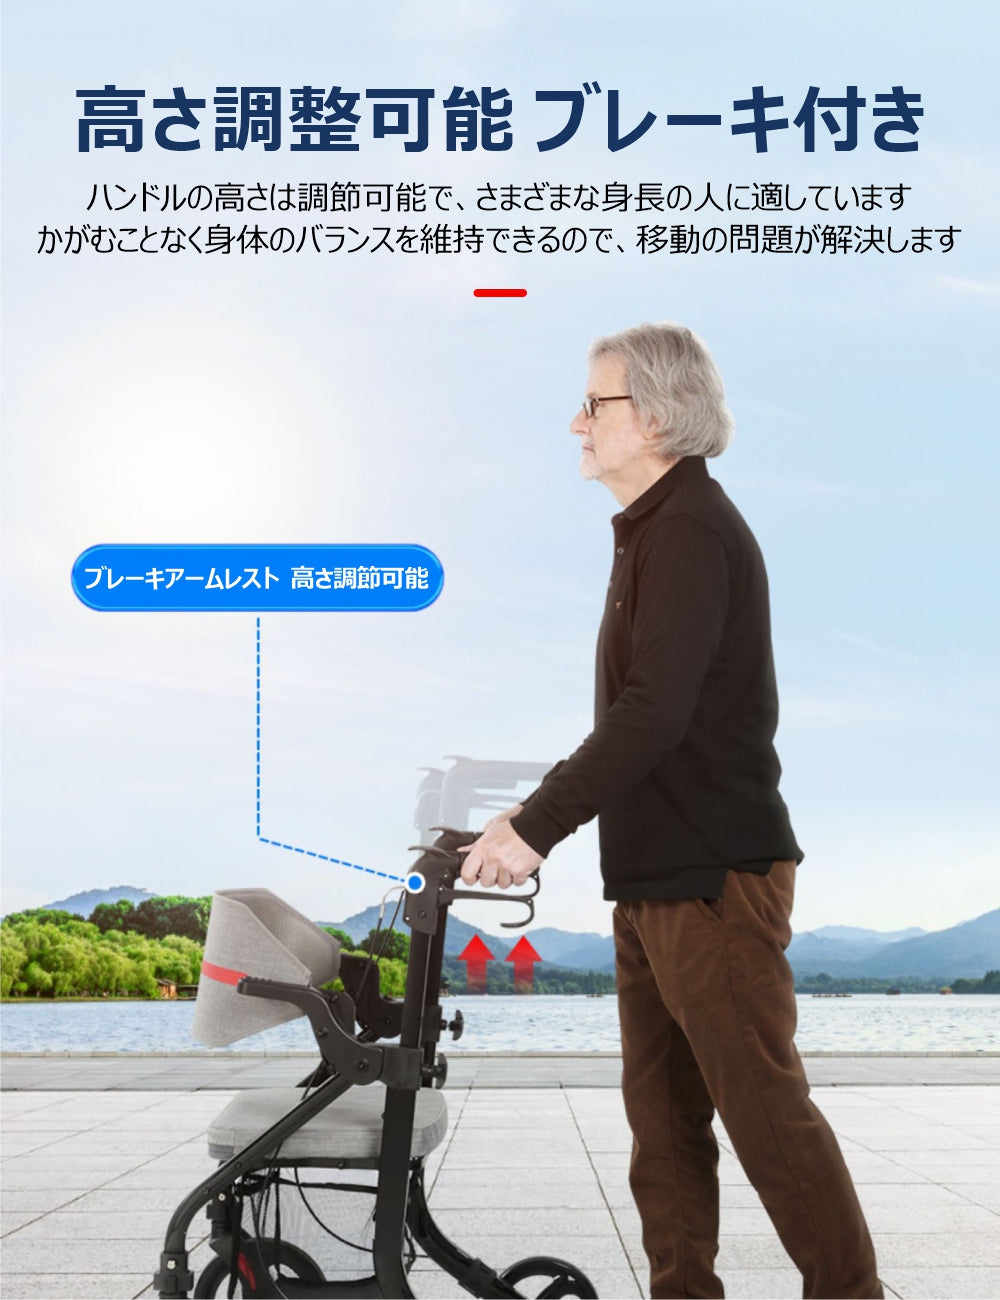 Care-Parents シルバーカー 多機能 手押し車 (CP-9269)